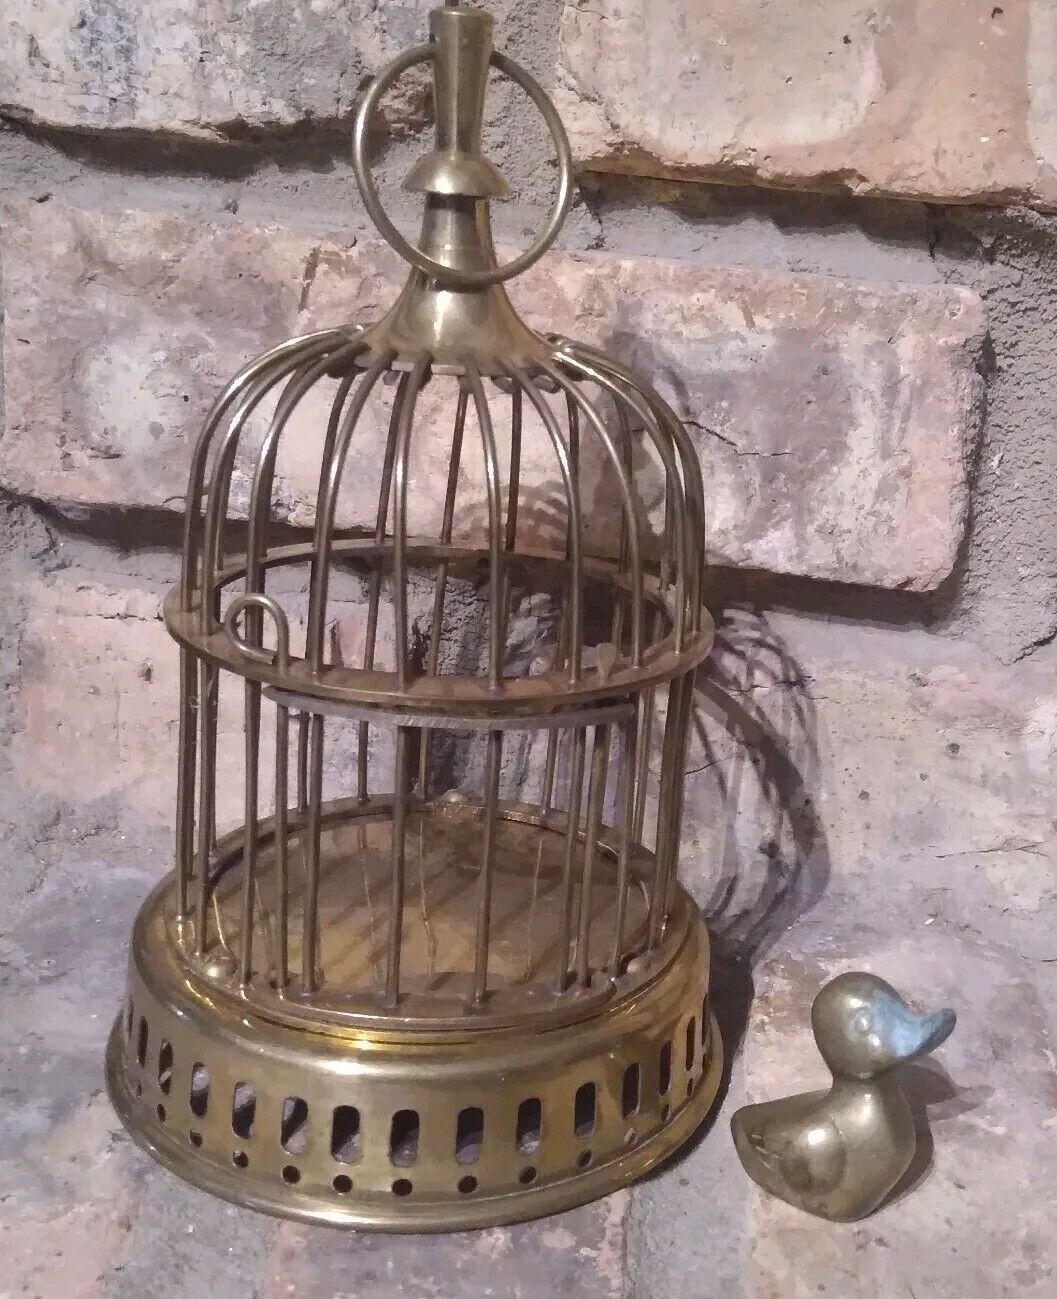 Vintage Brass Birdcage with Bird - Door does not open